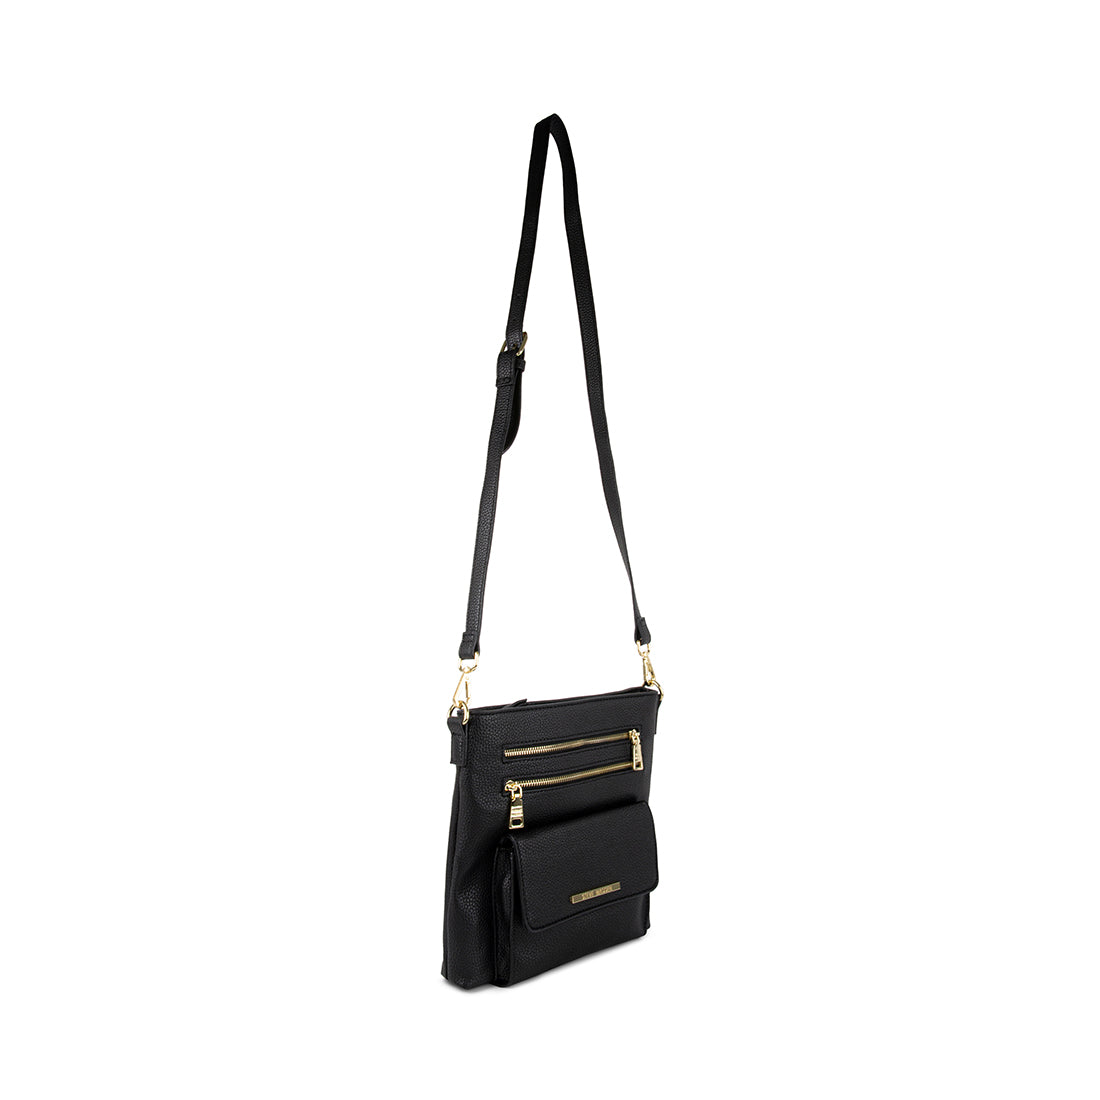 BLANAA Black Clutches & Evening Bags | Women's Designer Handbags ...